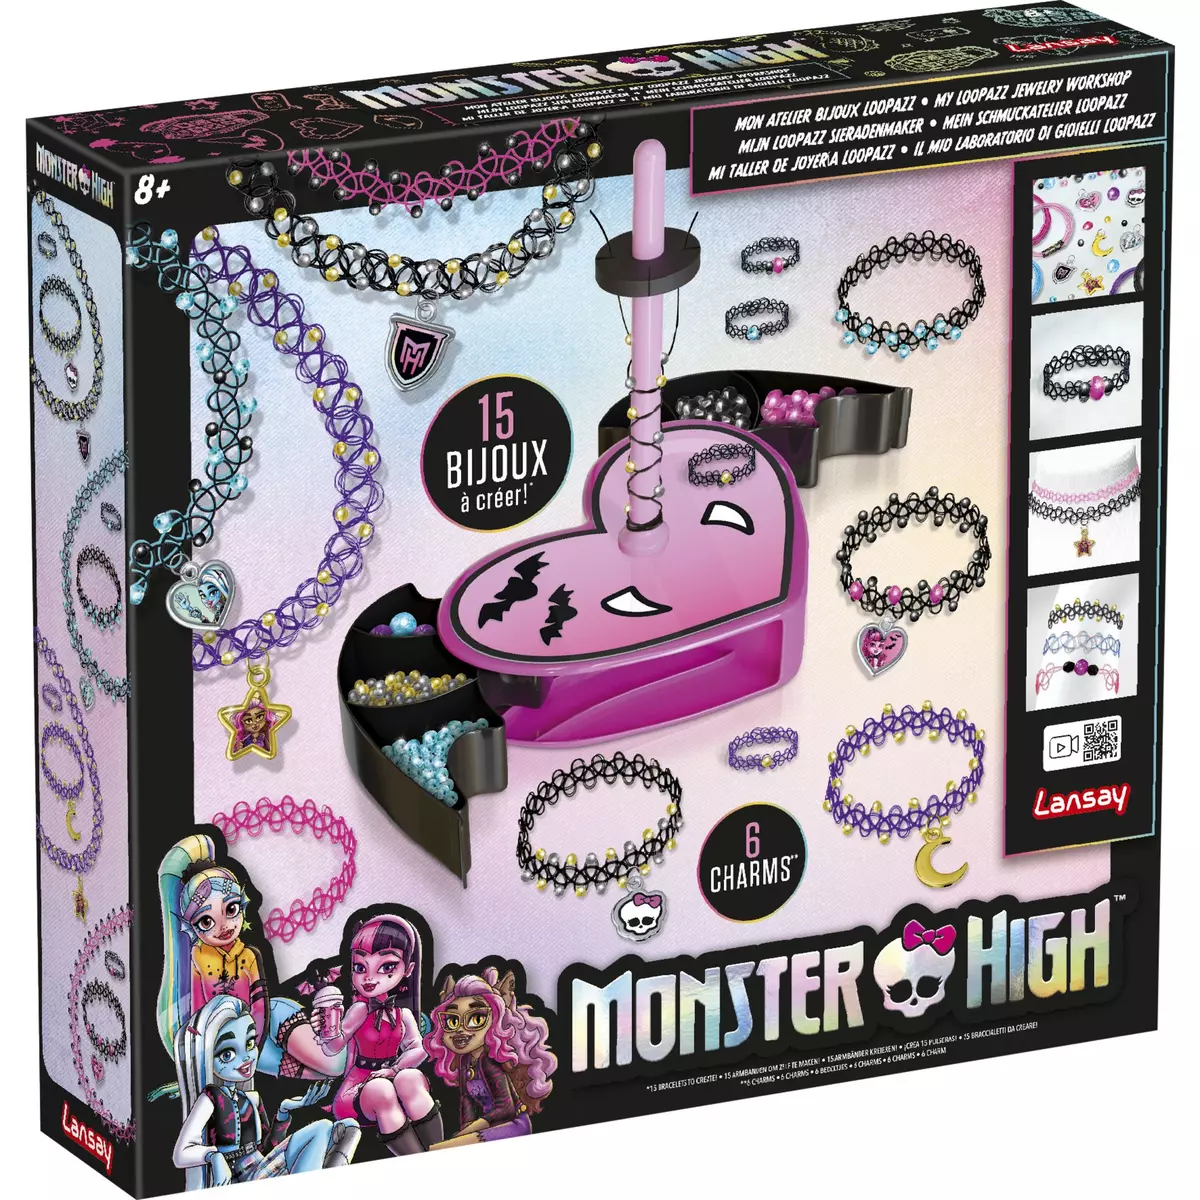 LANSAY Mon atelier à bijoux Loopazz 15 bijoux à créer Monster High